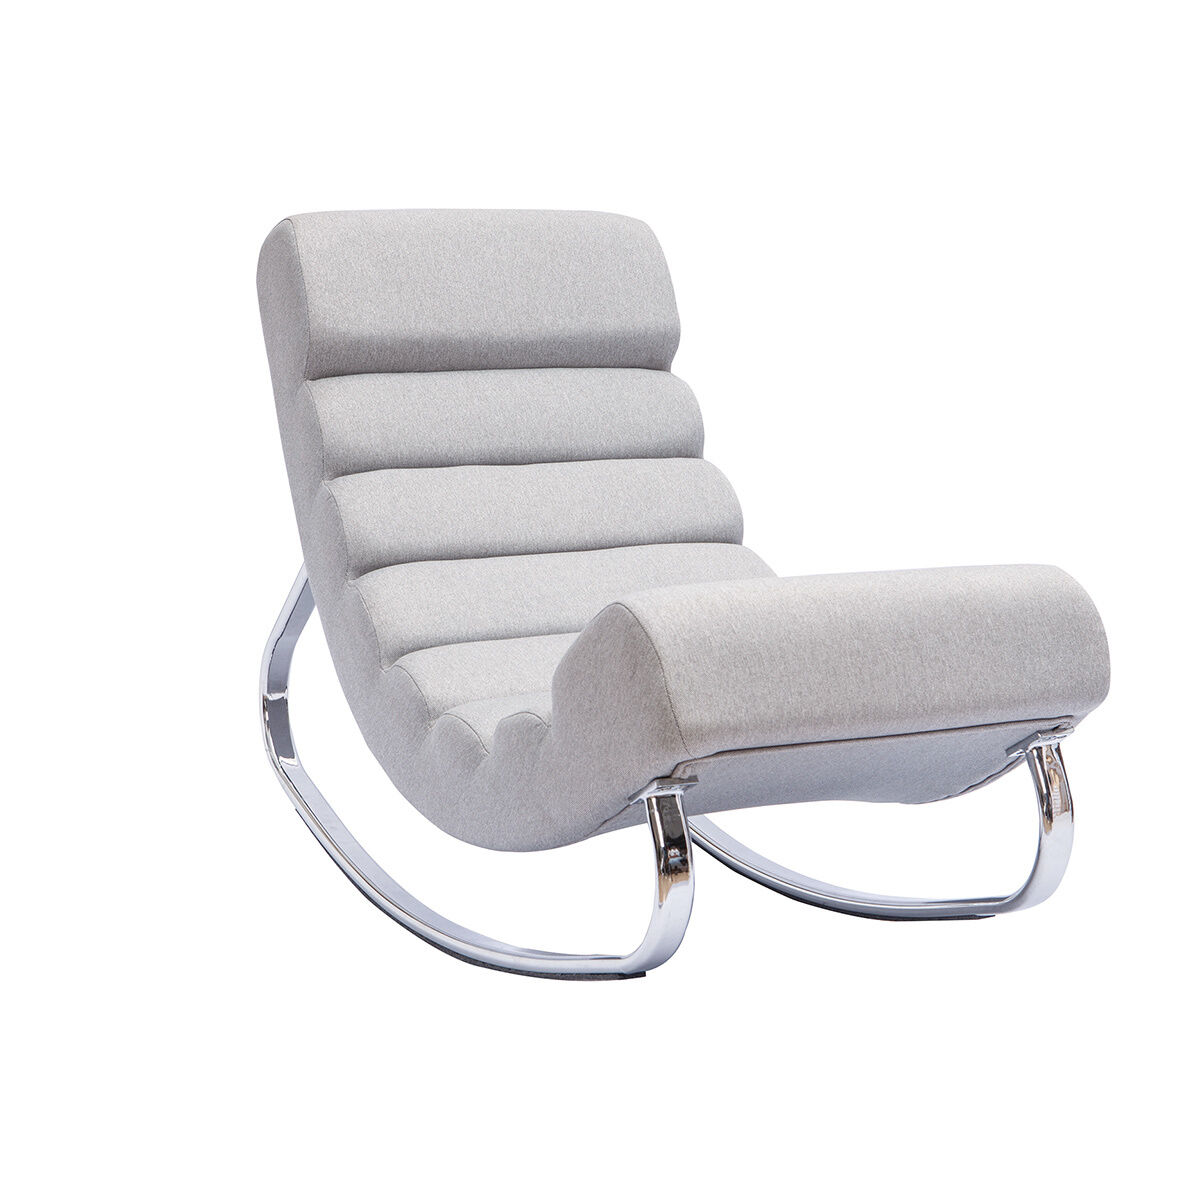 Miliboo Rocking chair design en tissu gris clair et acier chromé TAYLOR